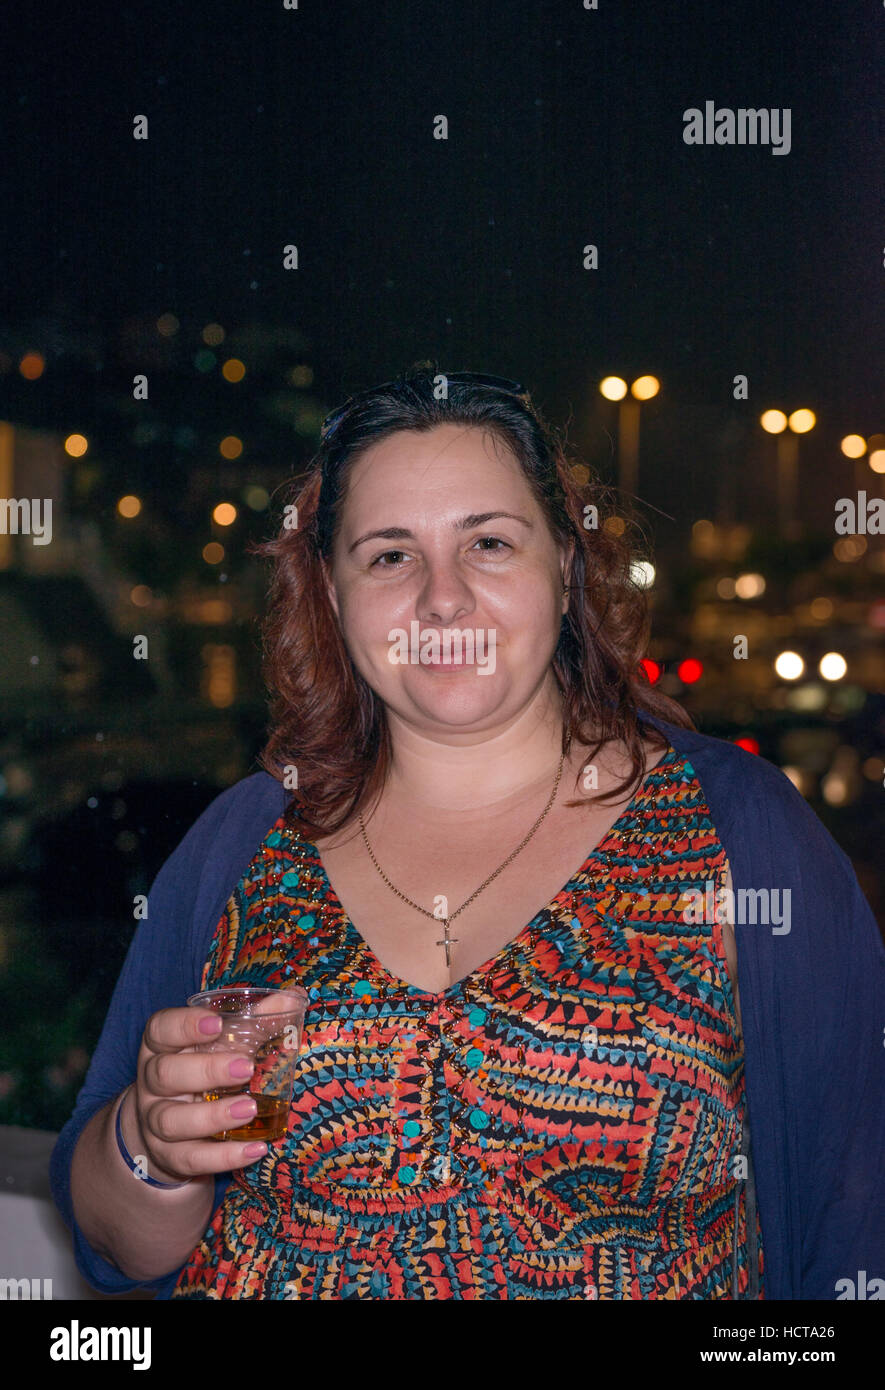 Brustbild der Reife dicke Frau, die mit Kunststoff-Kappe in der Hand auf Nacht Lichter Hintergrund steht. Stockfoto